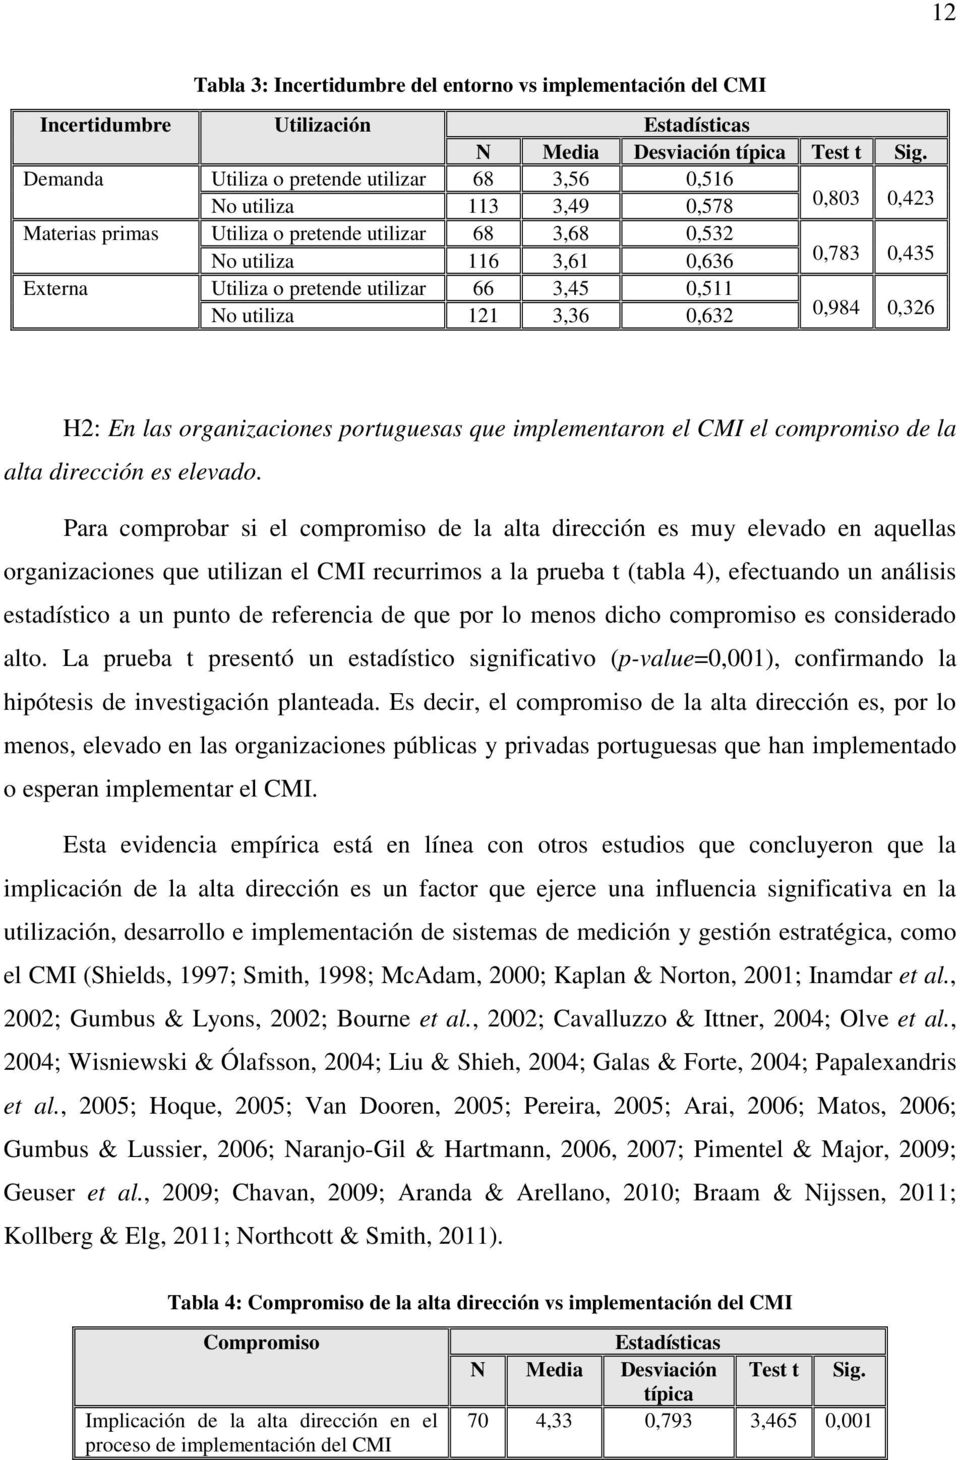 o pretende utilizar 66 3,45 0,511 No utiliza 121 3,36 0,632 0,984 0,326 H2: En las organizaciones portuguesas que implementaron el CMI el compromiso de la alta dirección es elevado.